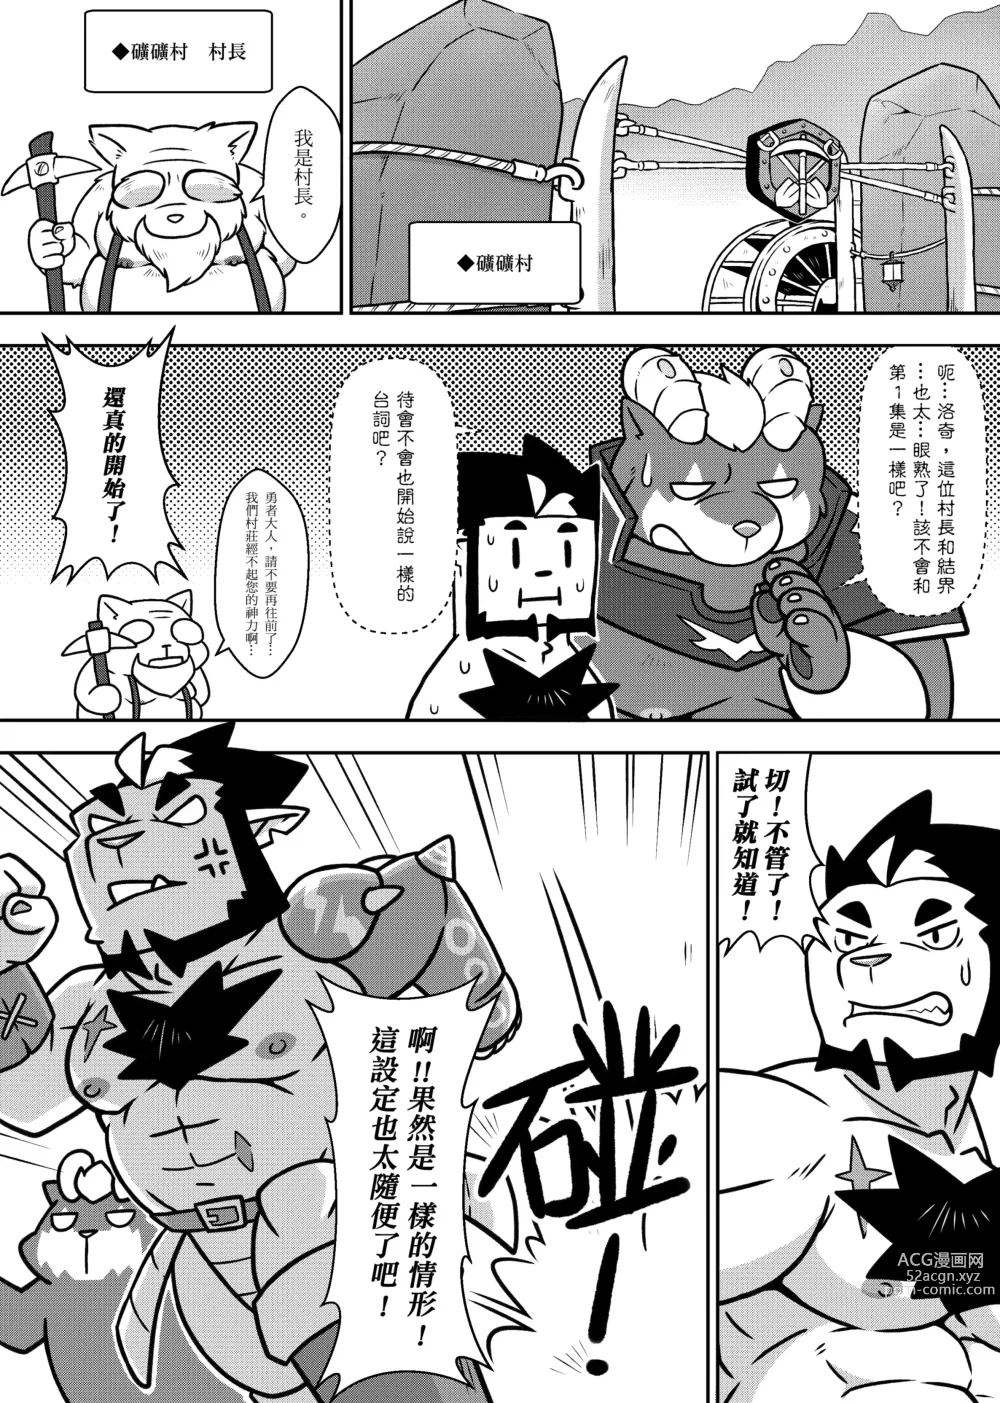 Page 4 of doujinshi 勇者的大小只有魔王塞得下2